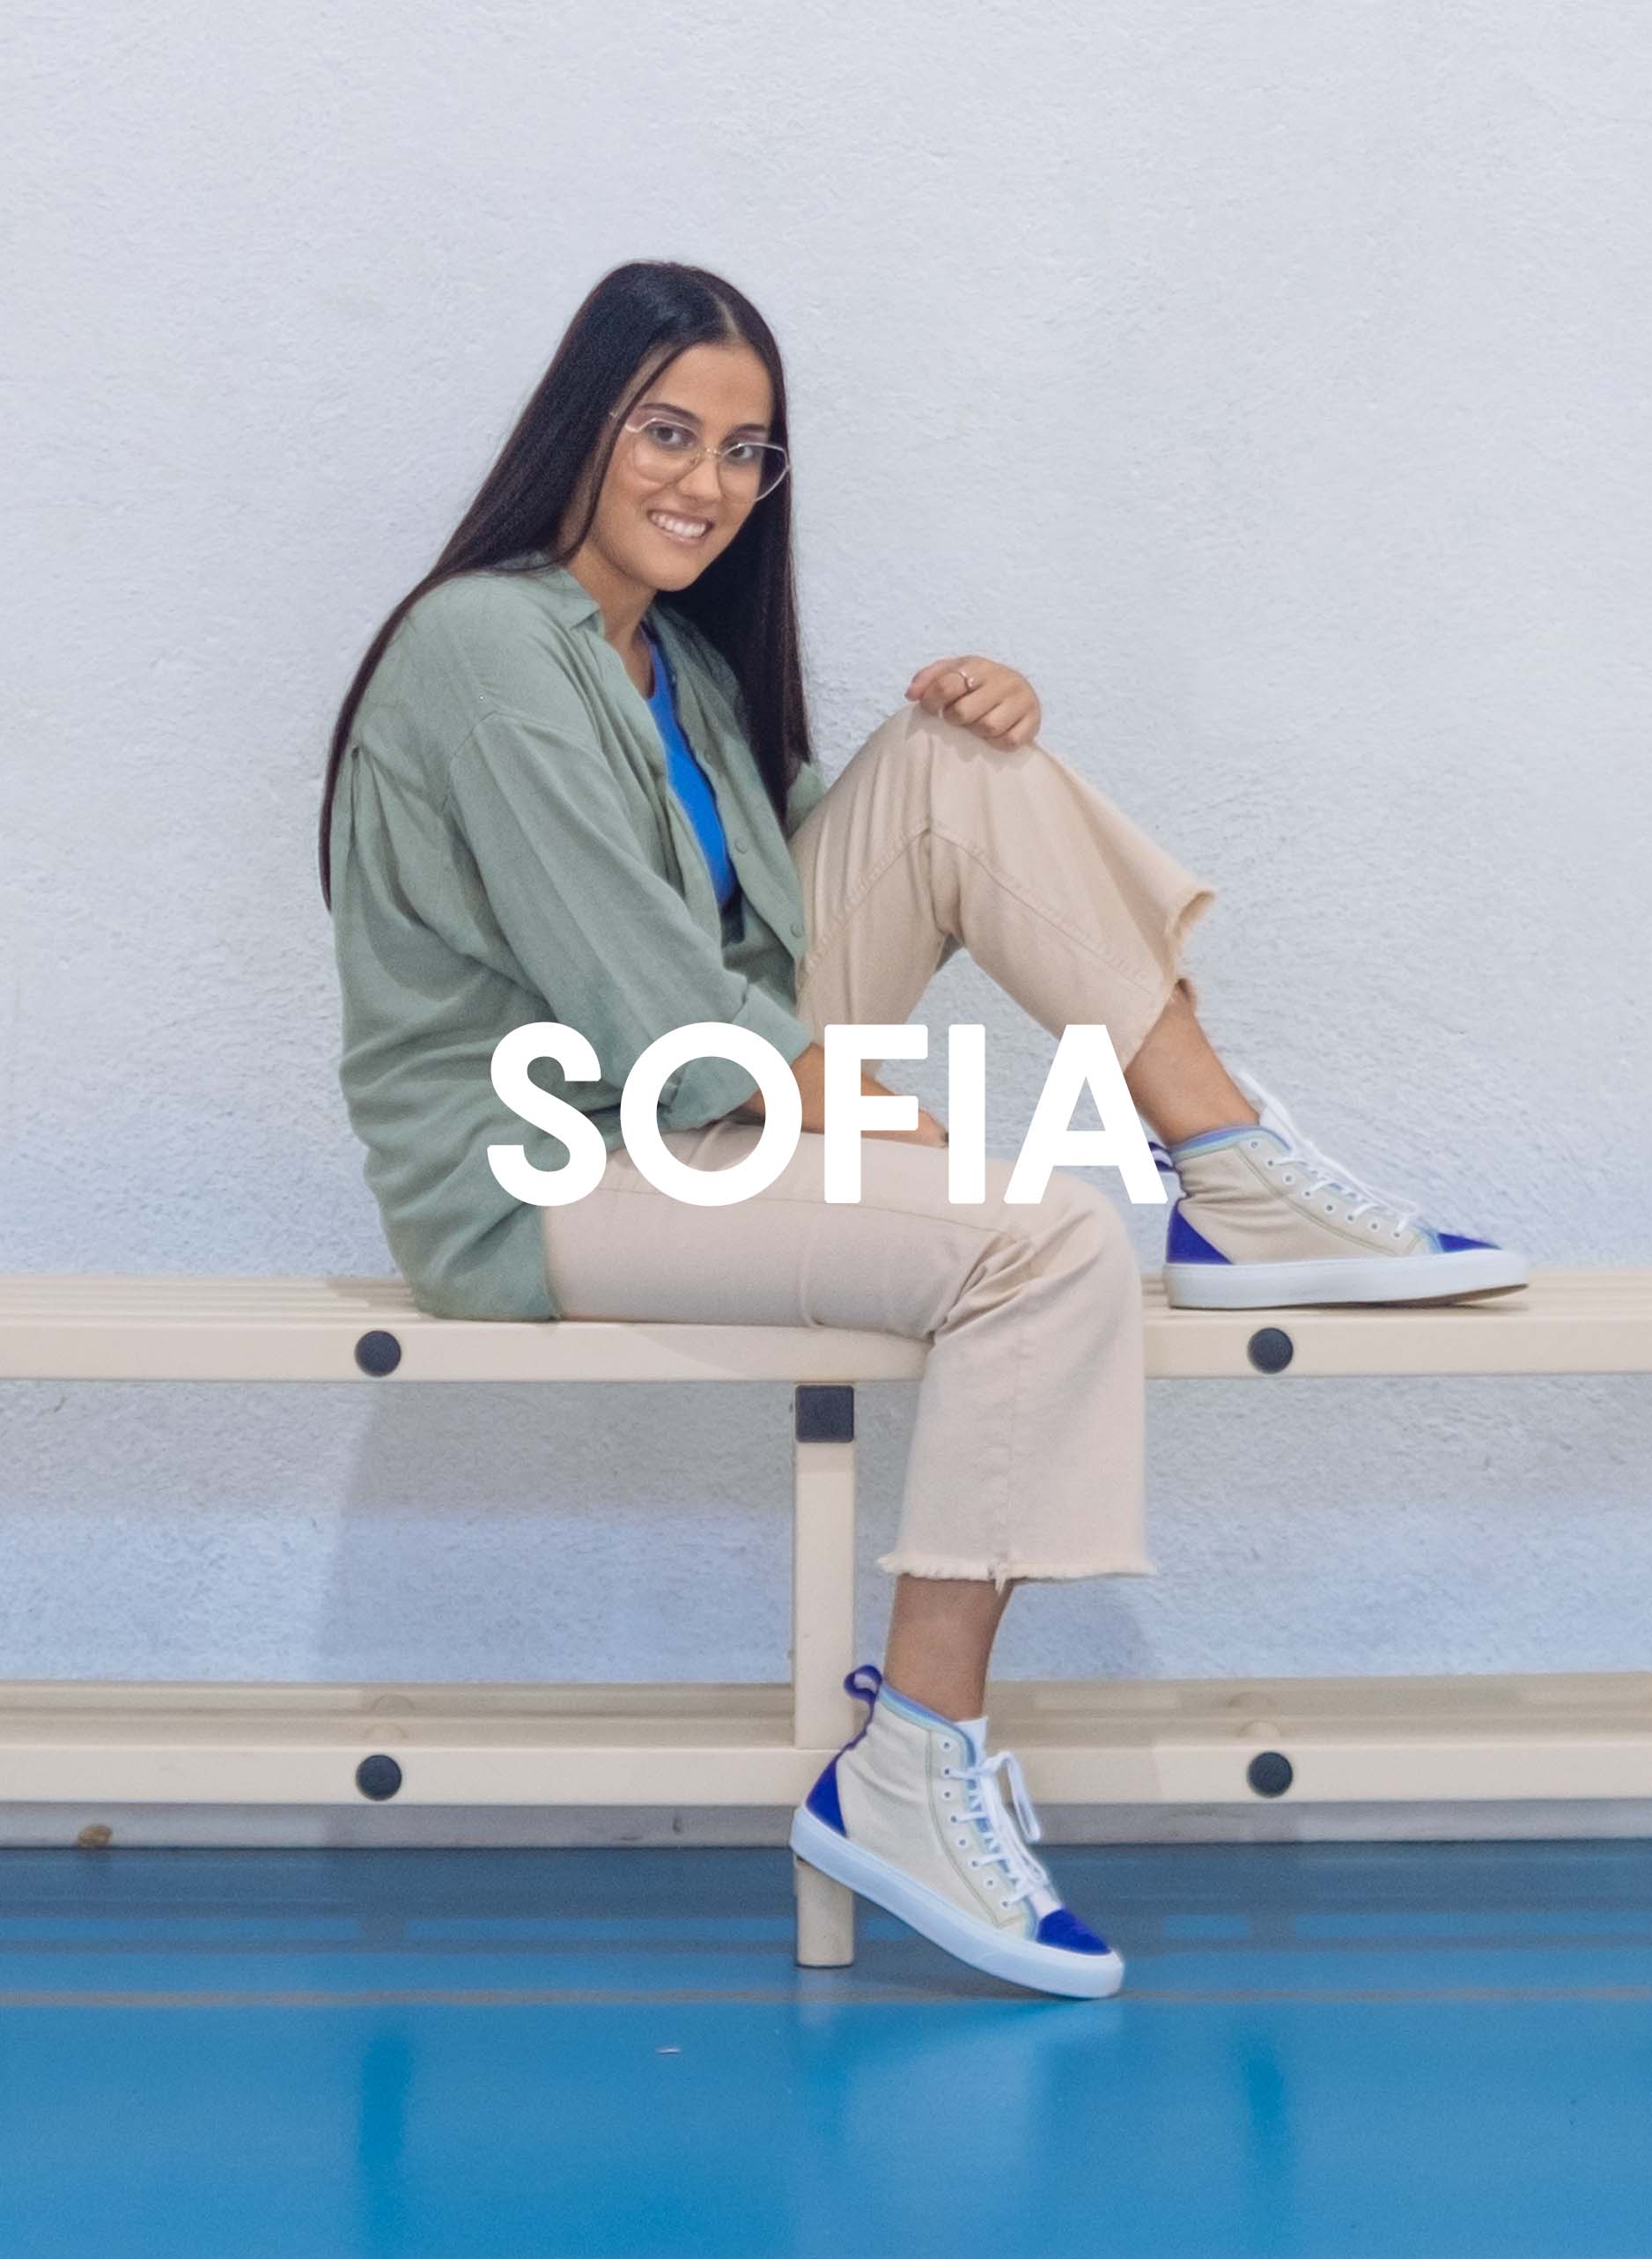 Sofía con una camisa verde y pantalones beige sentada en un banco con Diverge sneakers, promoviendo el impacto social y el calzado personalizado a través del proyecto Imagine.